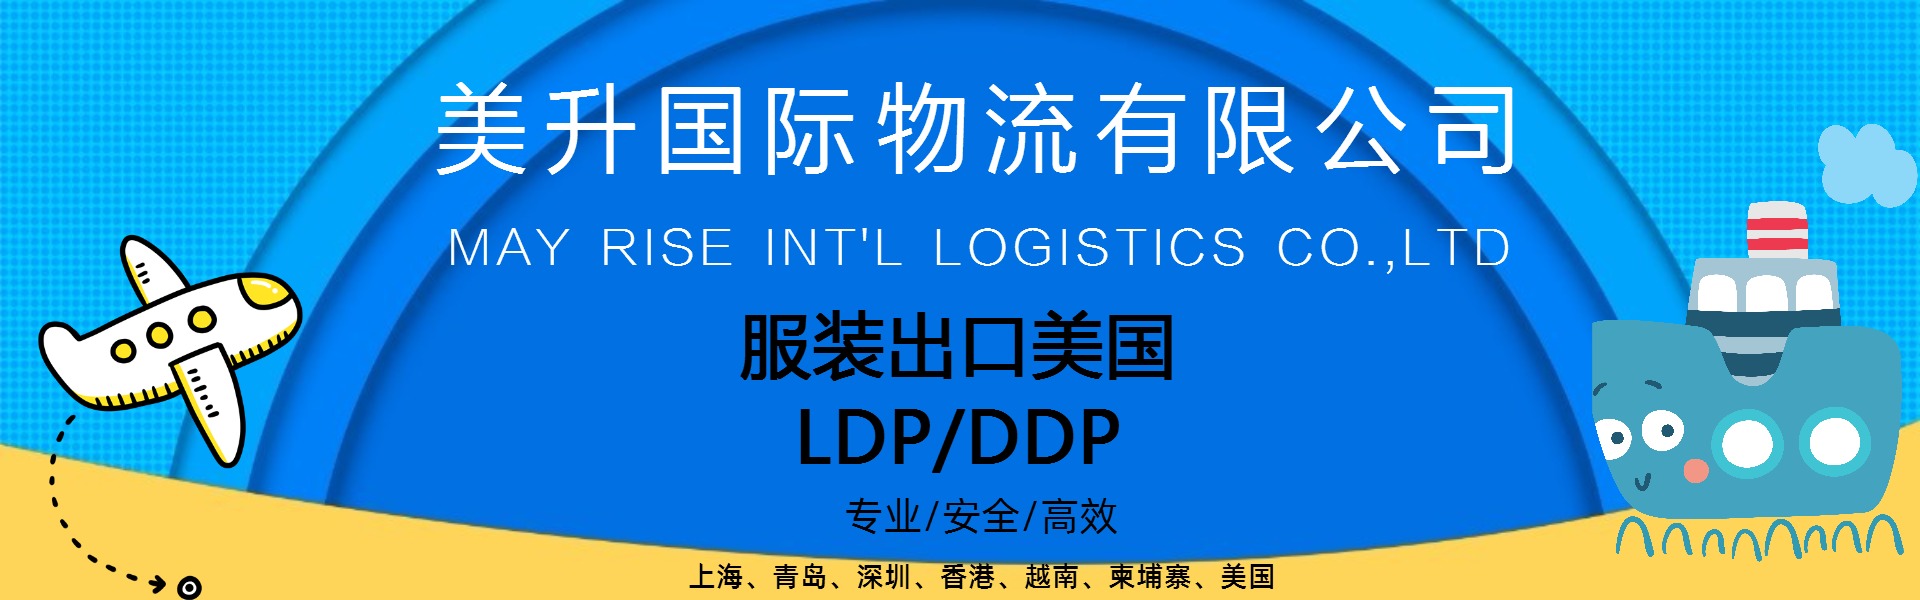 服装出美国含税到门LDP/DDP服务